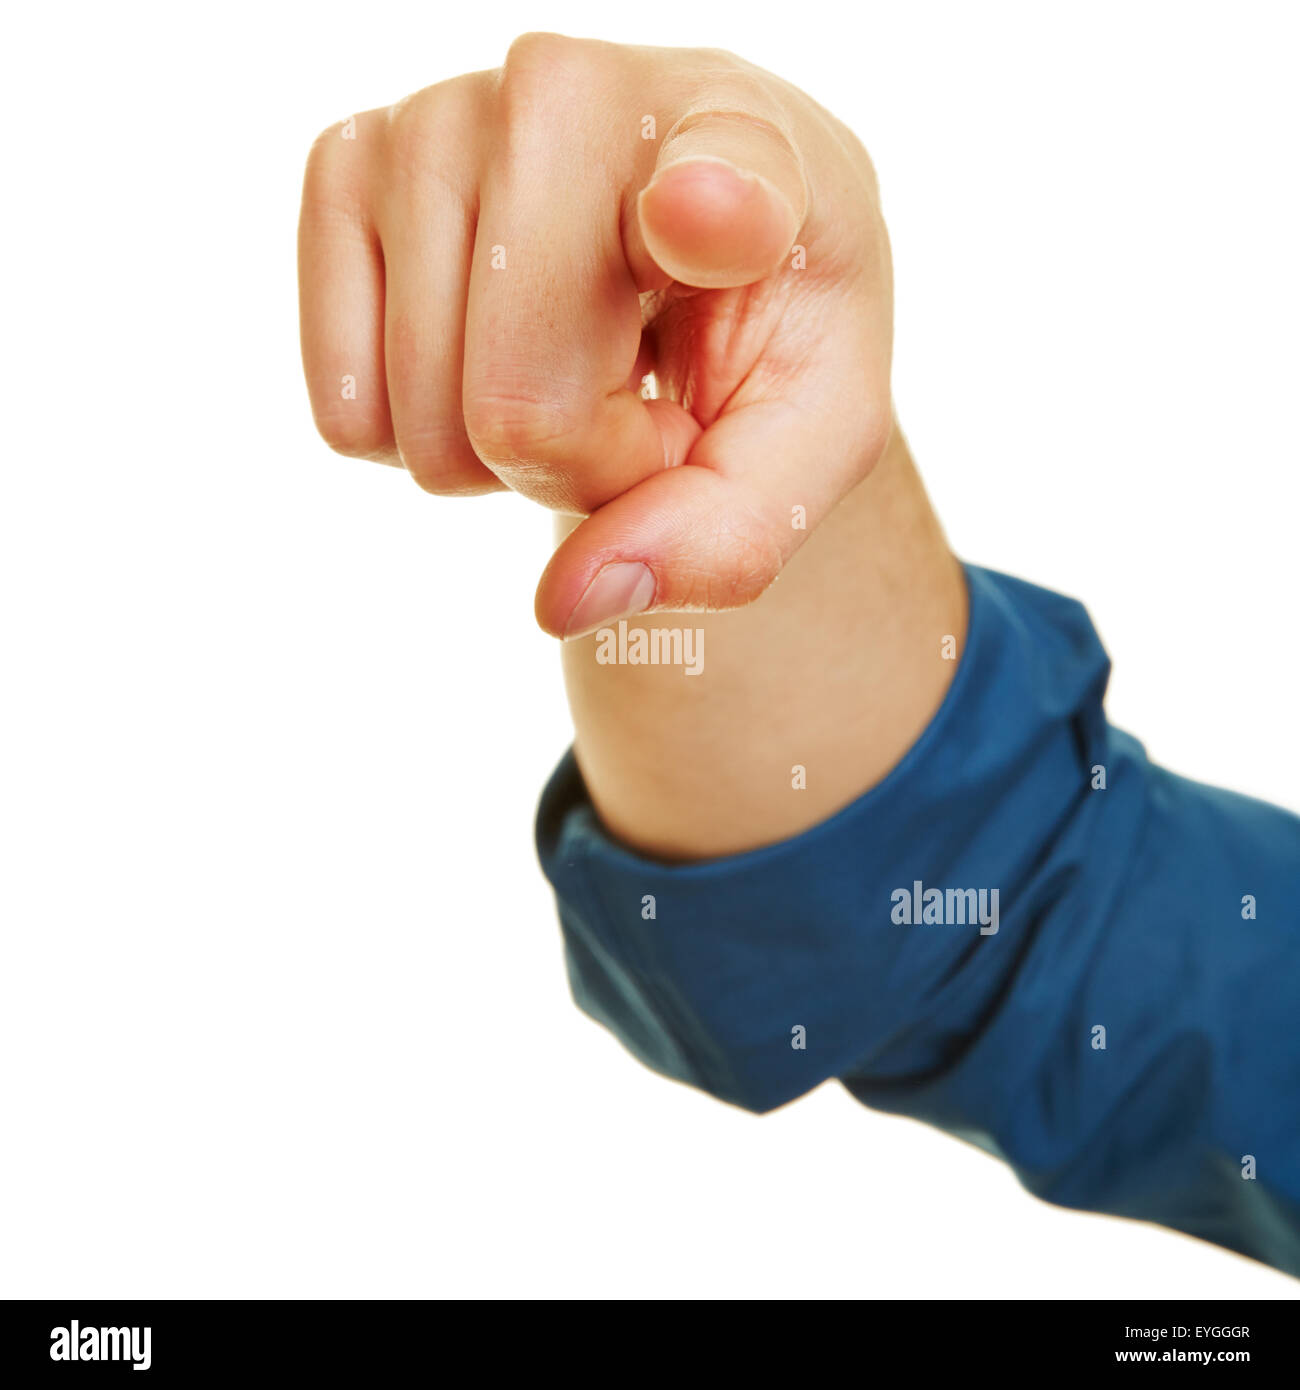 La mano con el dedo índice apuntando a la motivación Foto de stock